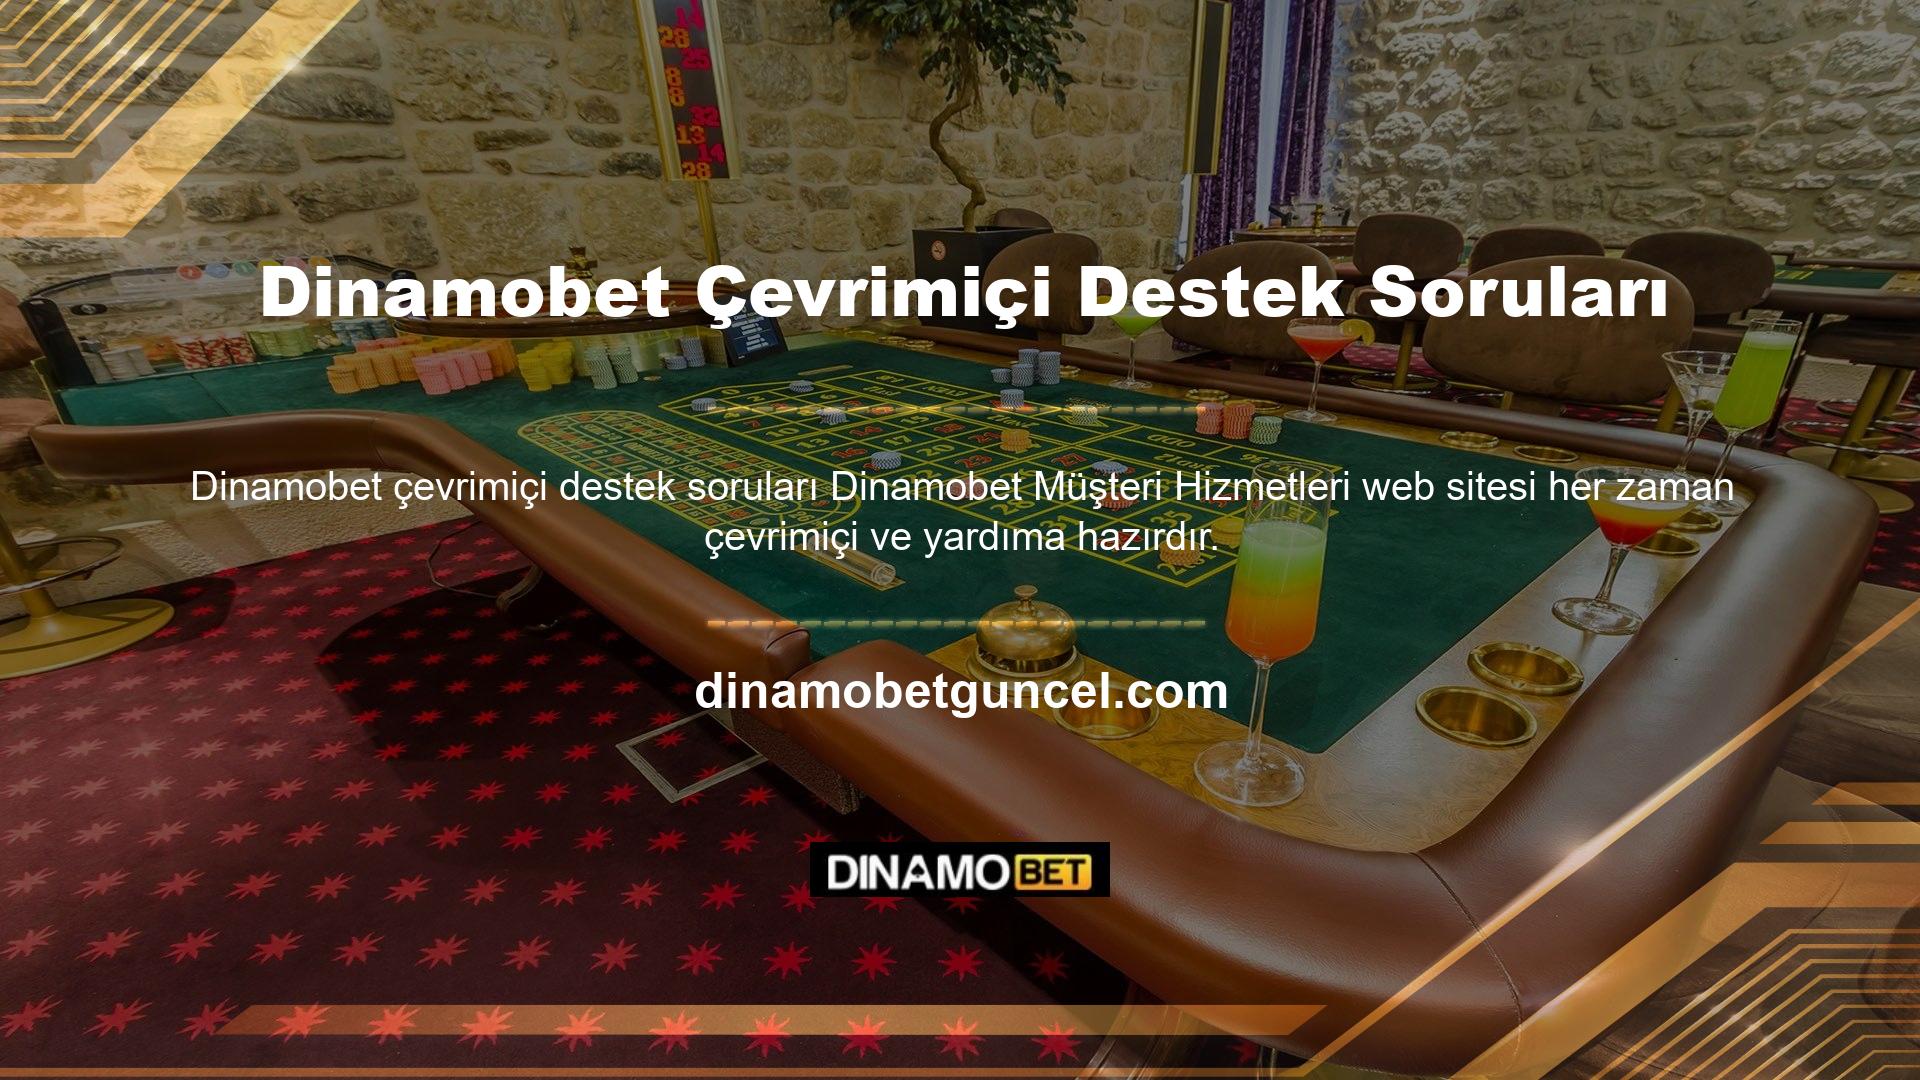 Dinamobet çevrimiçi desteği hakkında herhangi bir sorunuz varsa müşteri hizmetlerimiz sorununuzu çözmek için ellerinden geleni yapacaktır